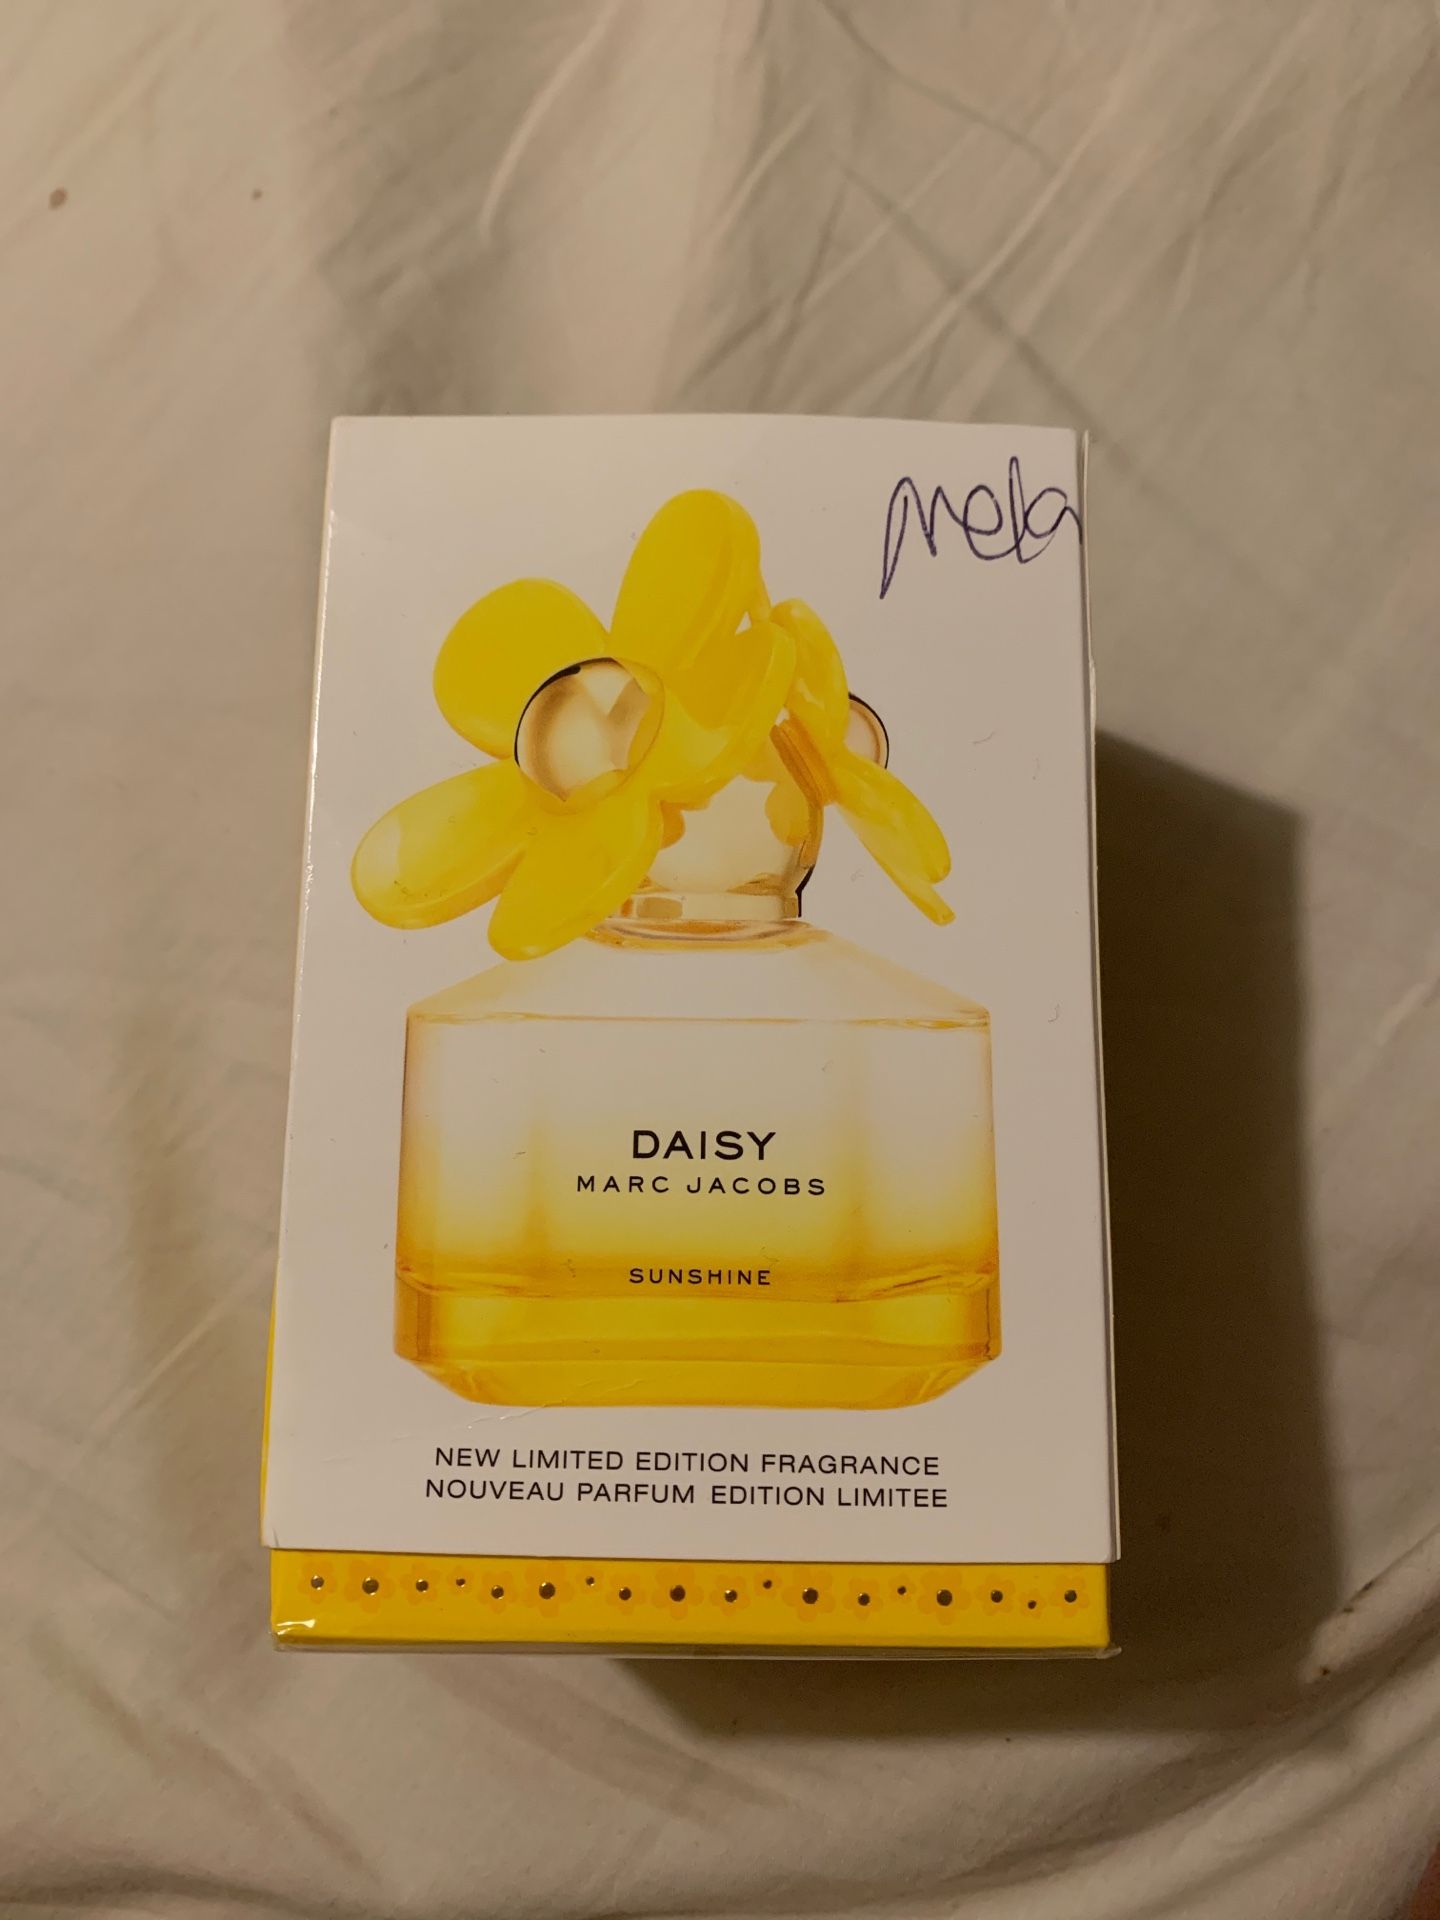 Daisy Marc Jacobs sunshine perfume